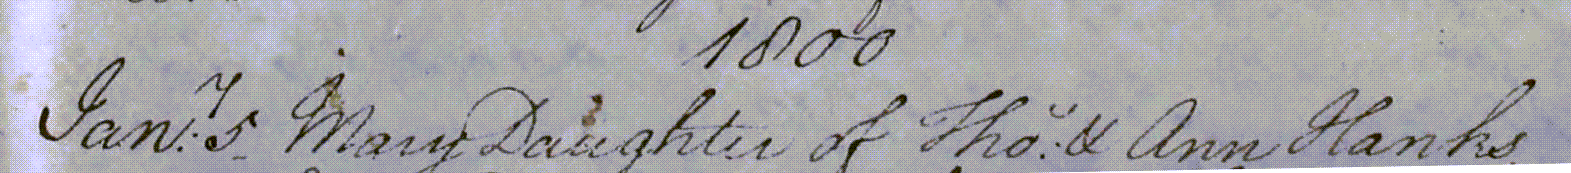 Figure 4: Baptism Register entry for Mary Hanks